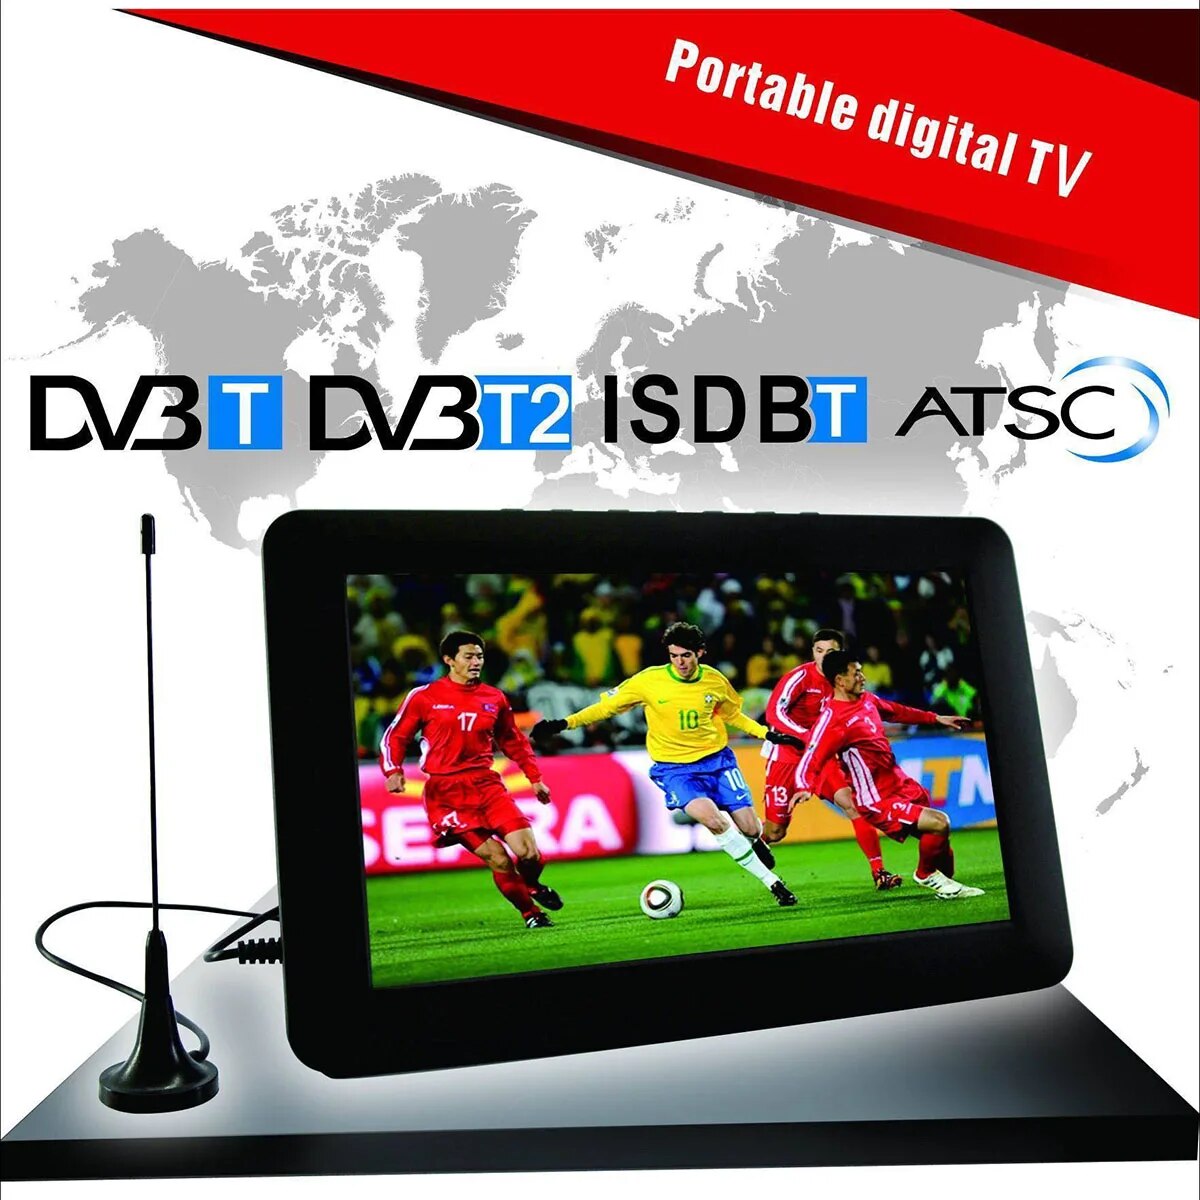 LCD TV ȭ  ڷ, ޴  ڵ TV DVB-T2, ISDB ATSC IDTV, 14 ġ